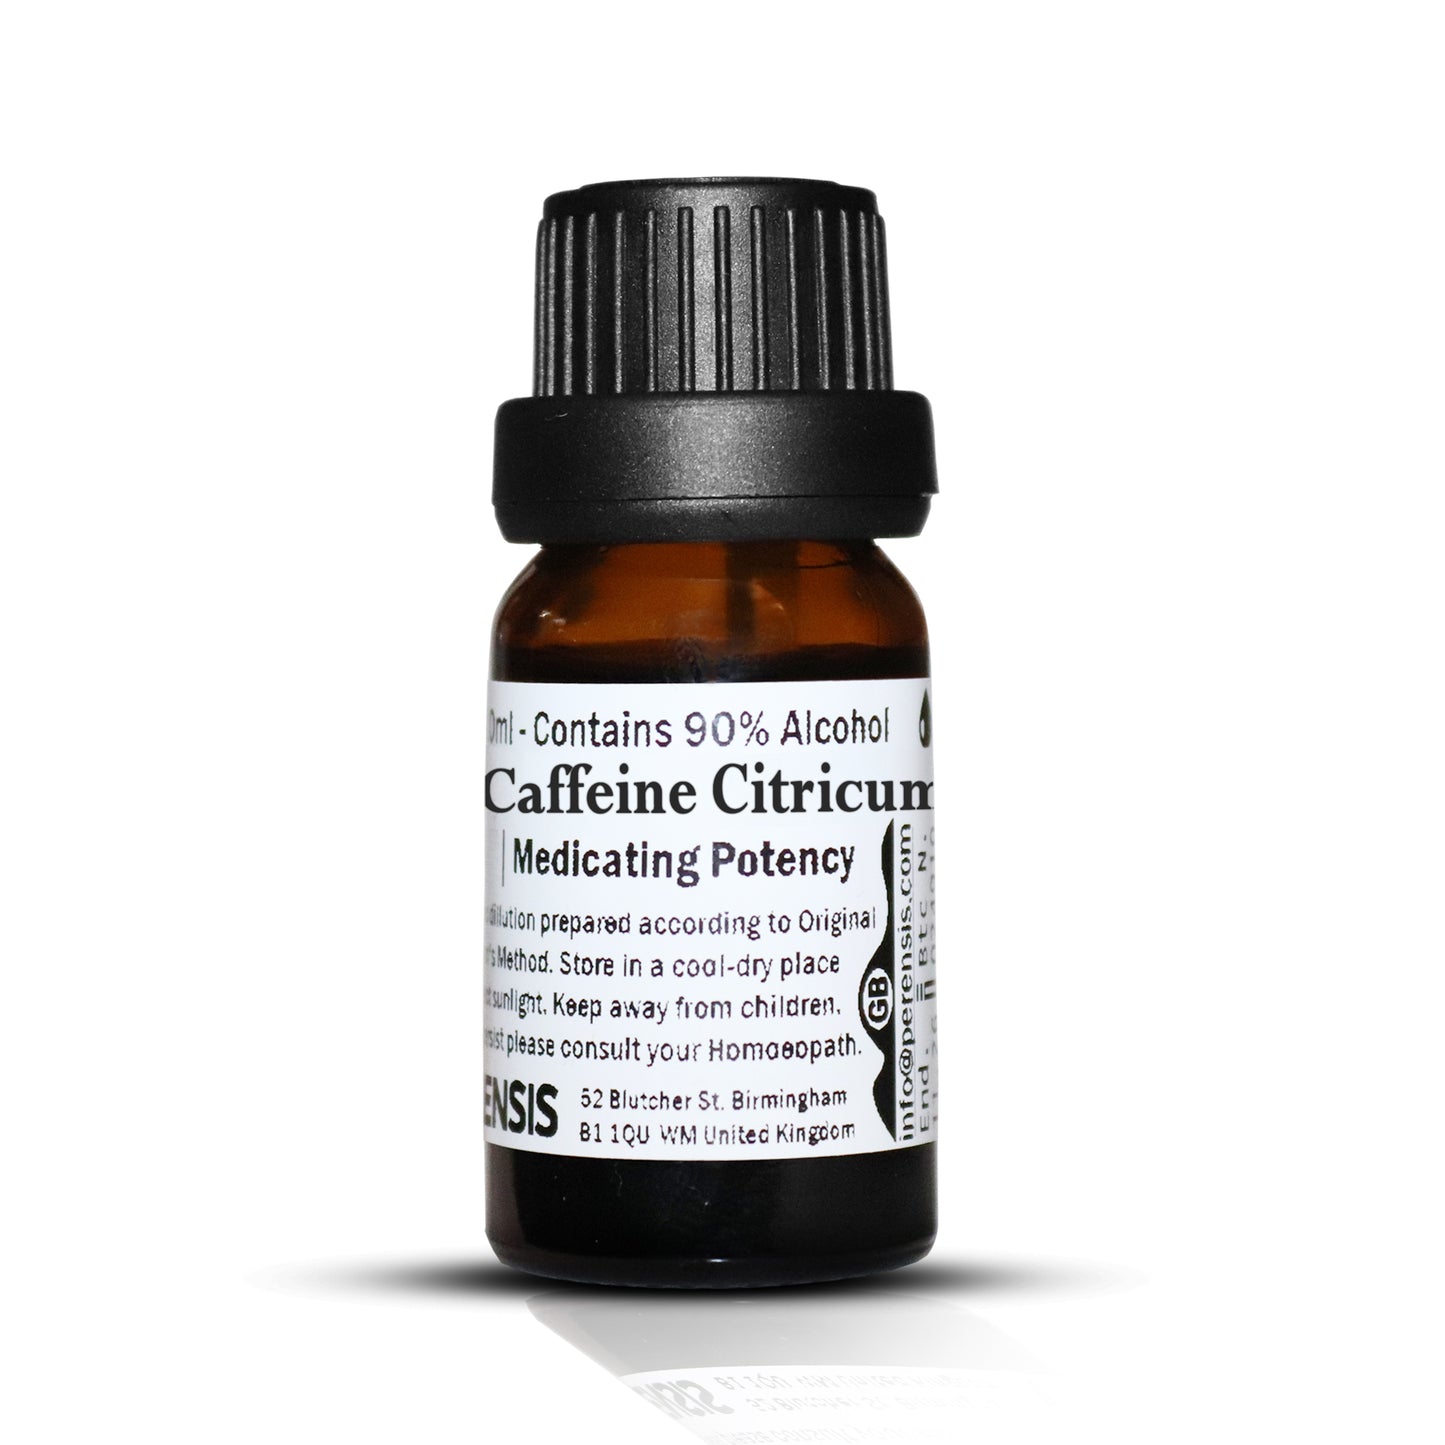 Caffeine Citricum